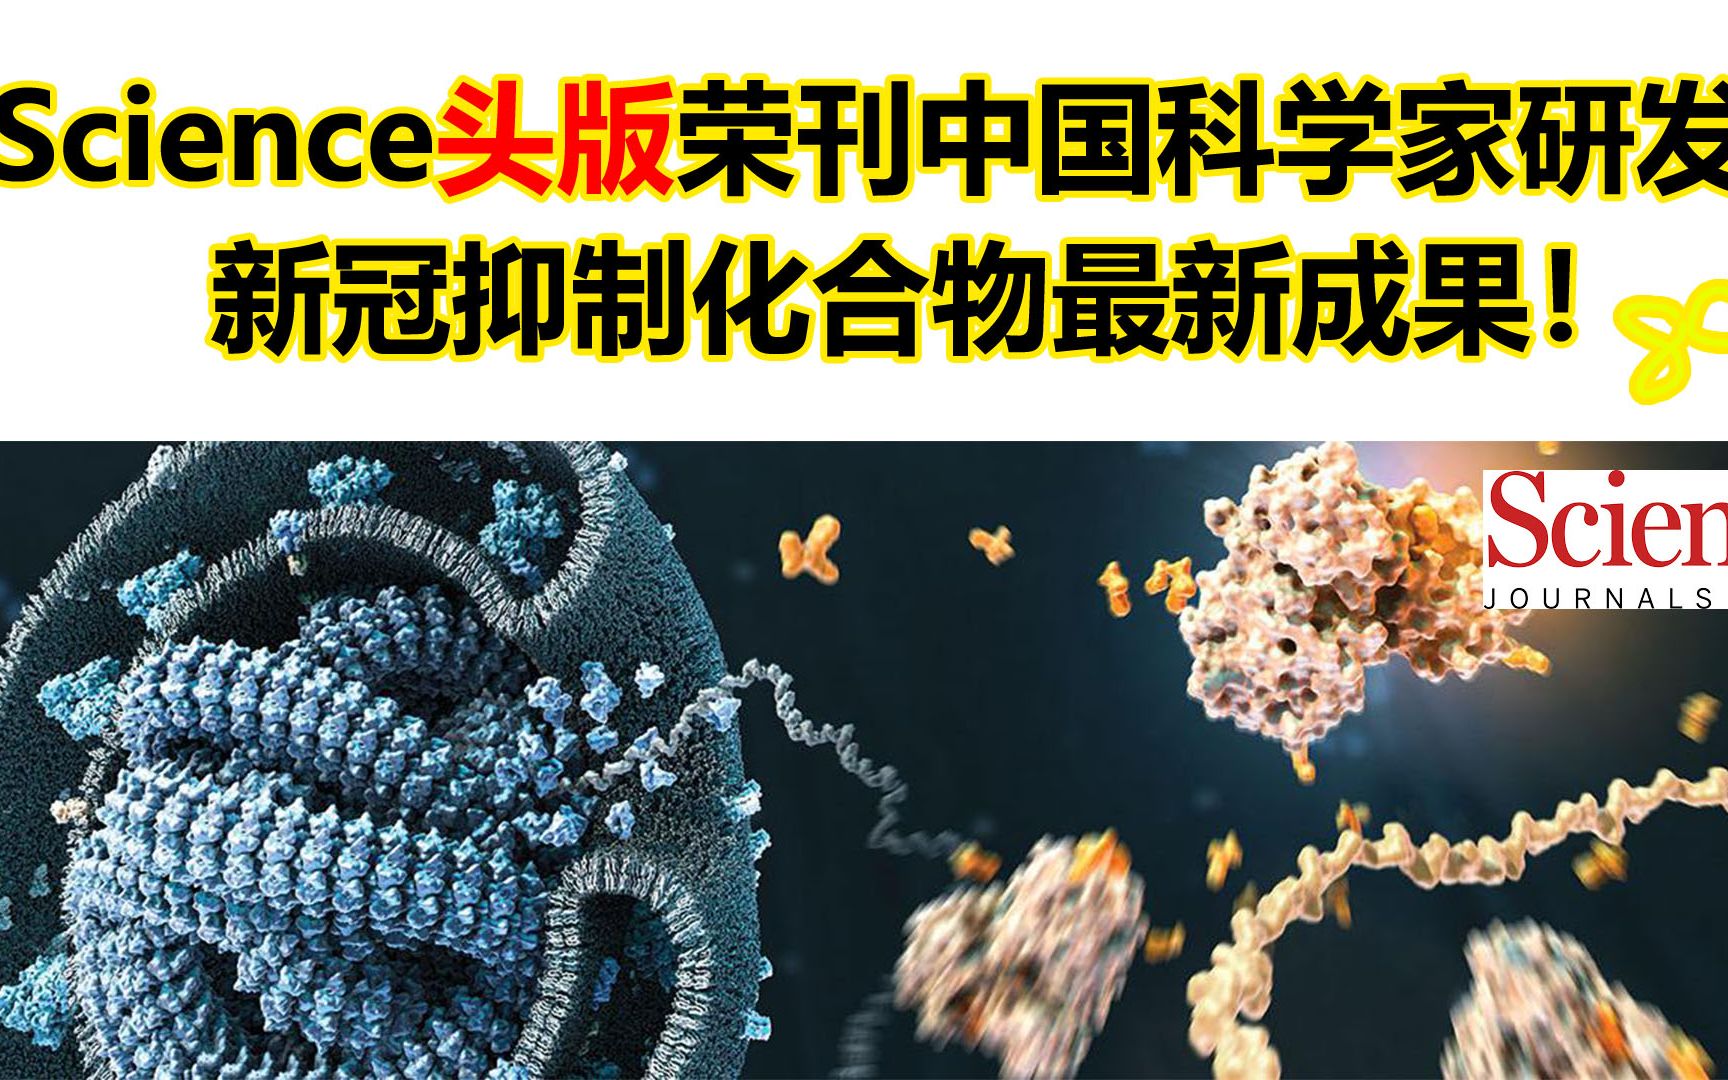 Science头版封面！中国新冠疫苗实验结果喜人！